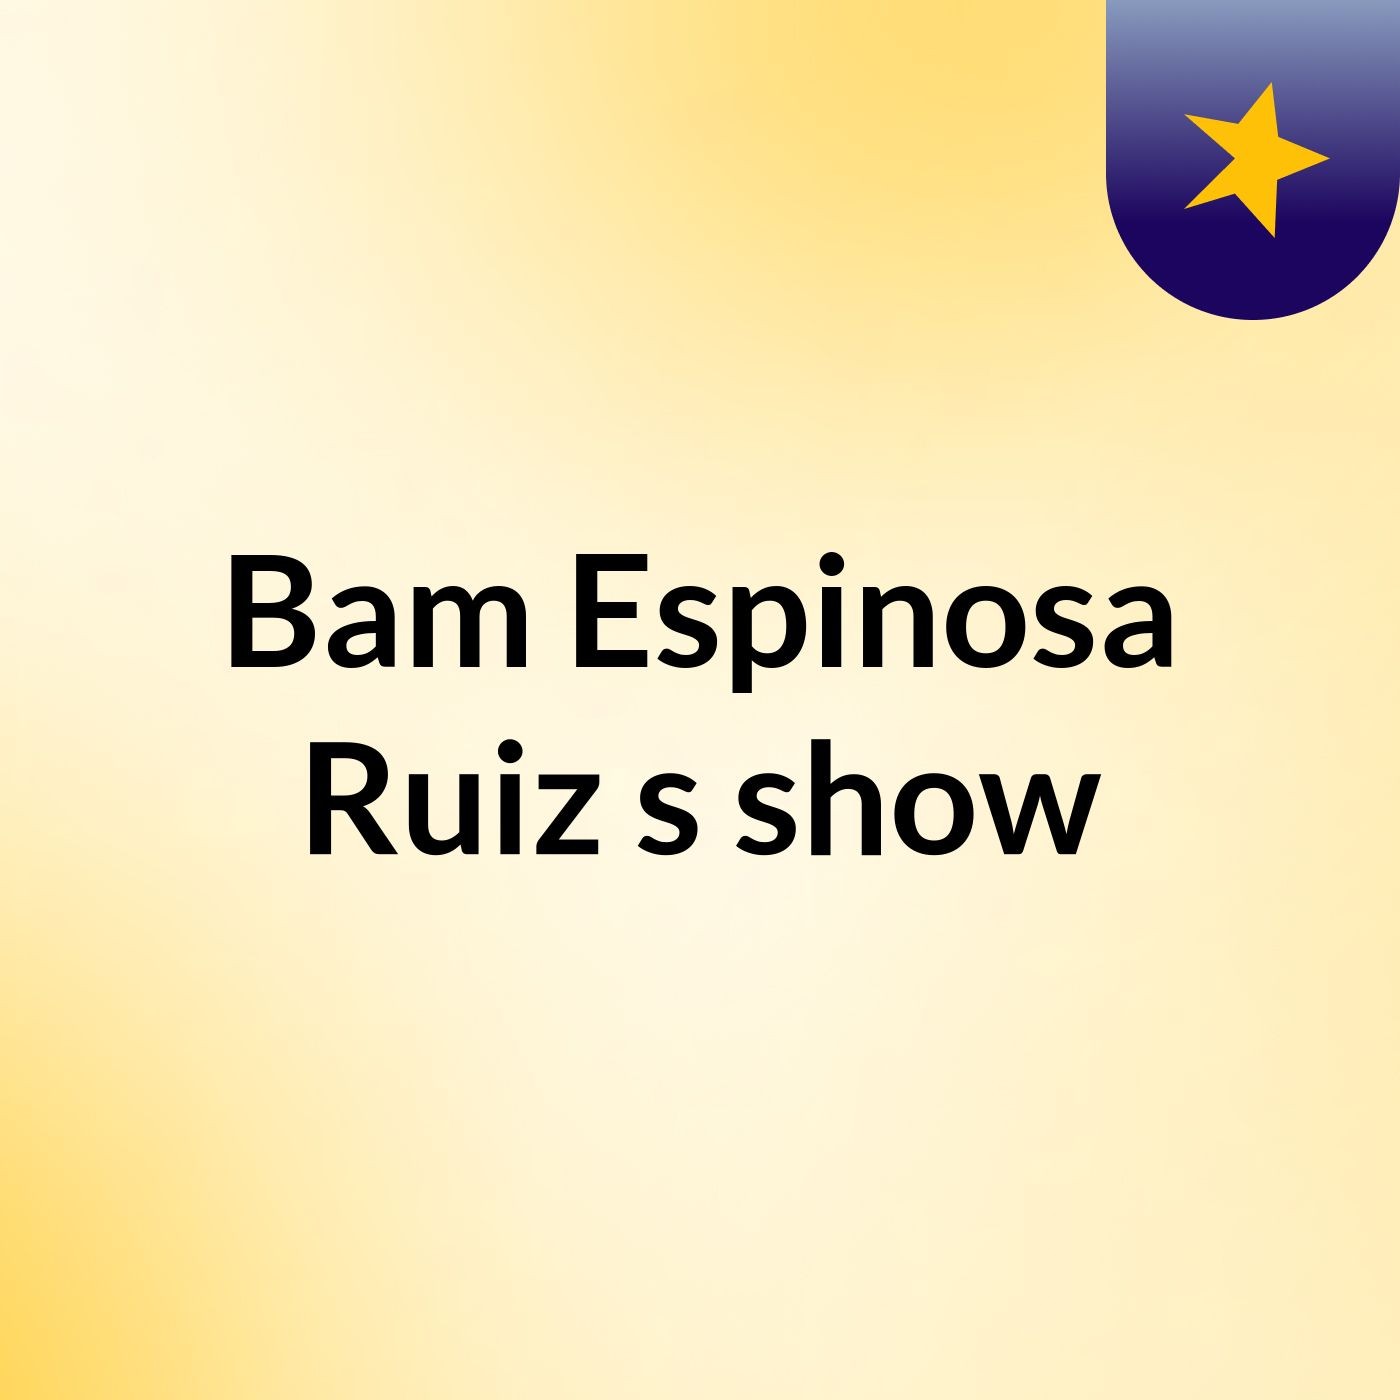 Bam Espinosa Ruiz's show